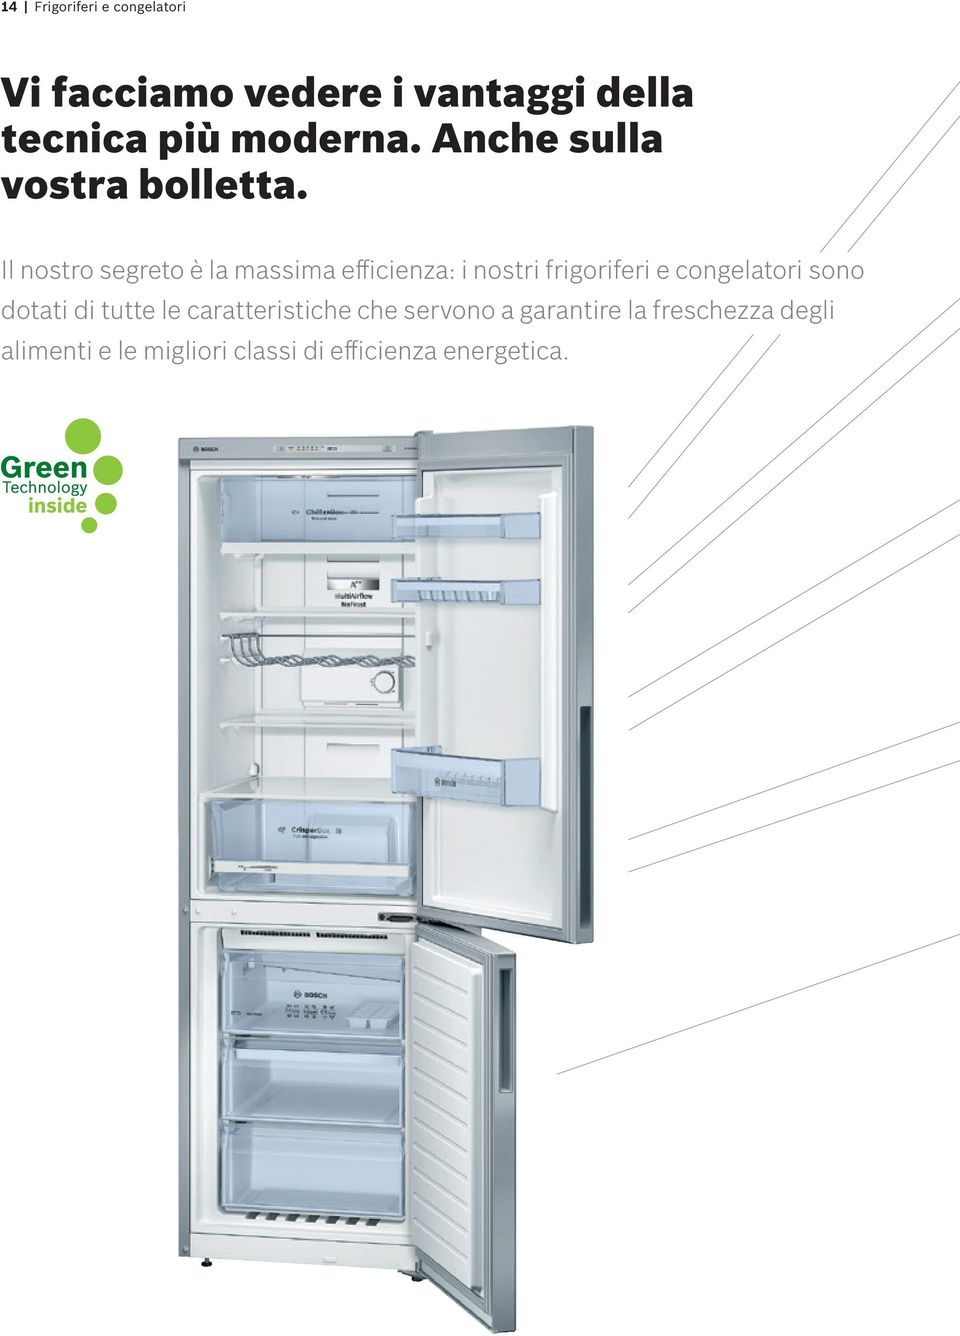 Il nostro segreto è la massima efficienza: i nostri frigoriferi e congelatori sono